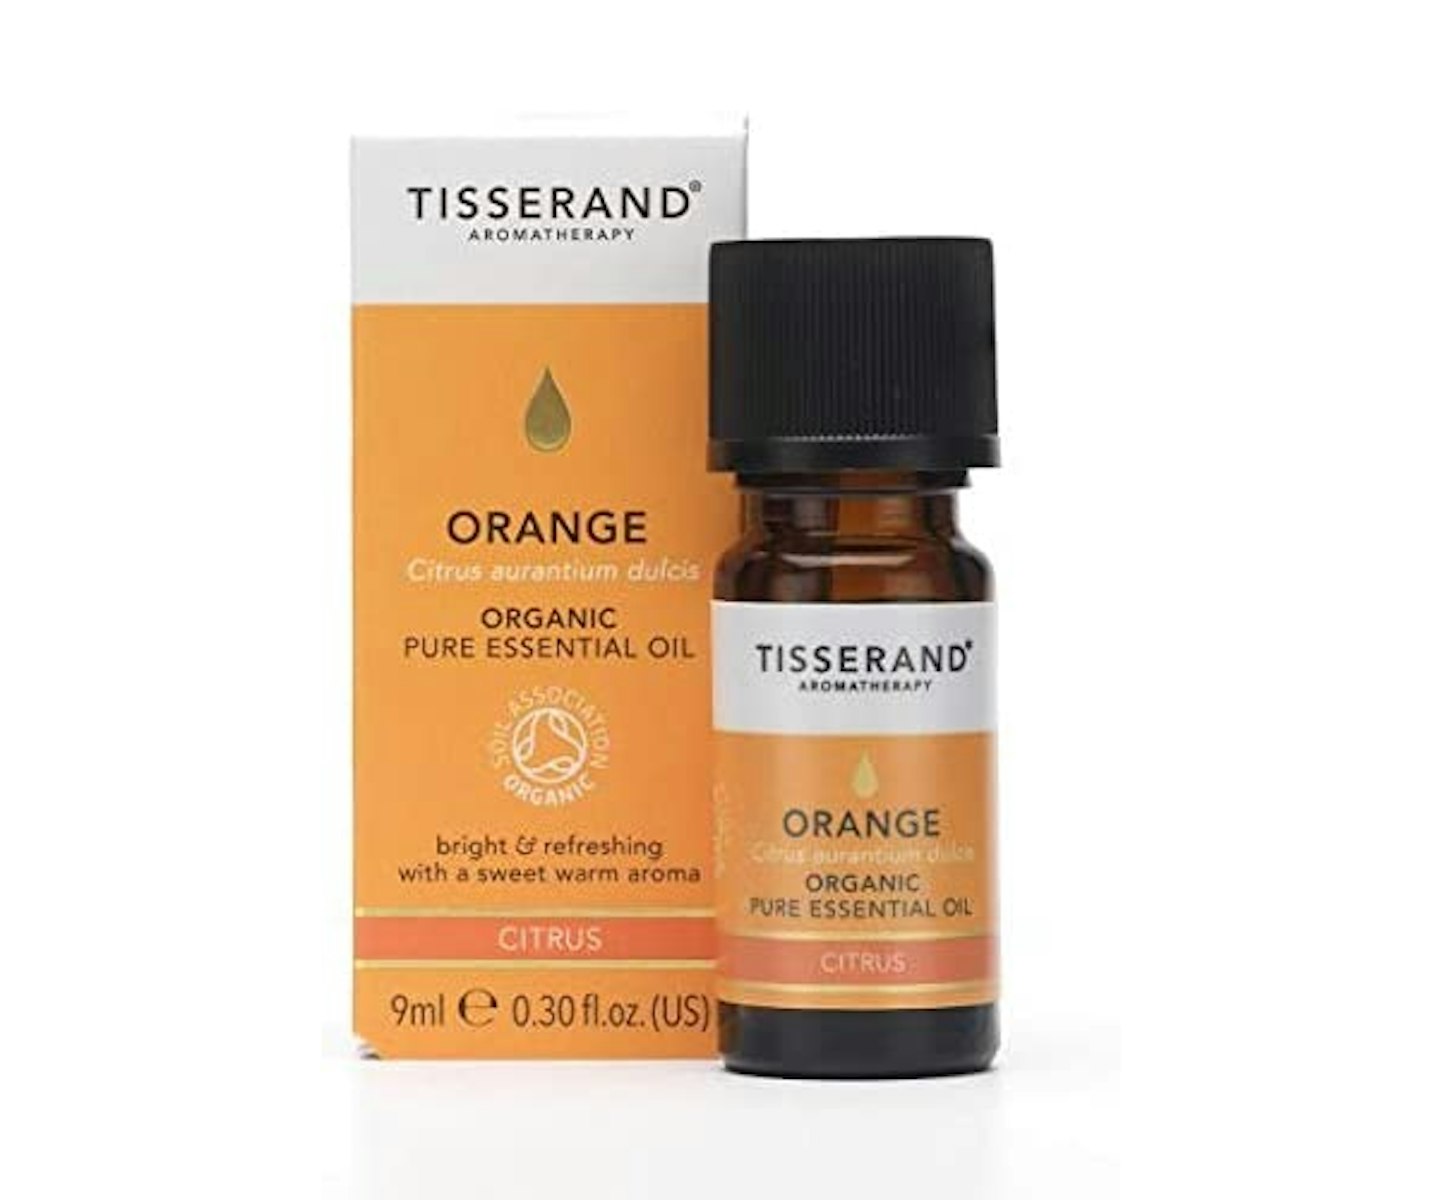 Tisserand Aromatherapy - Orange Essential Oil, 9 ml